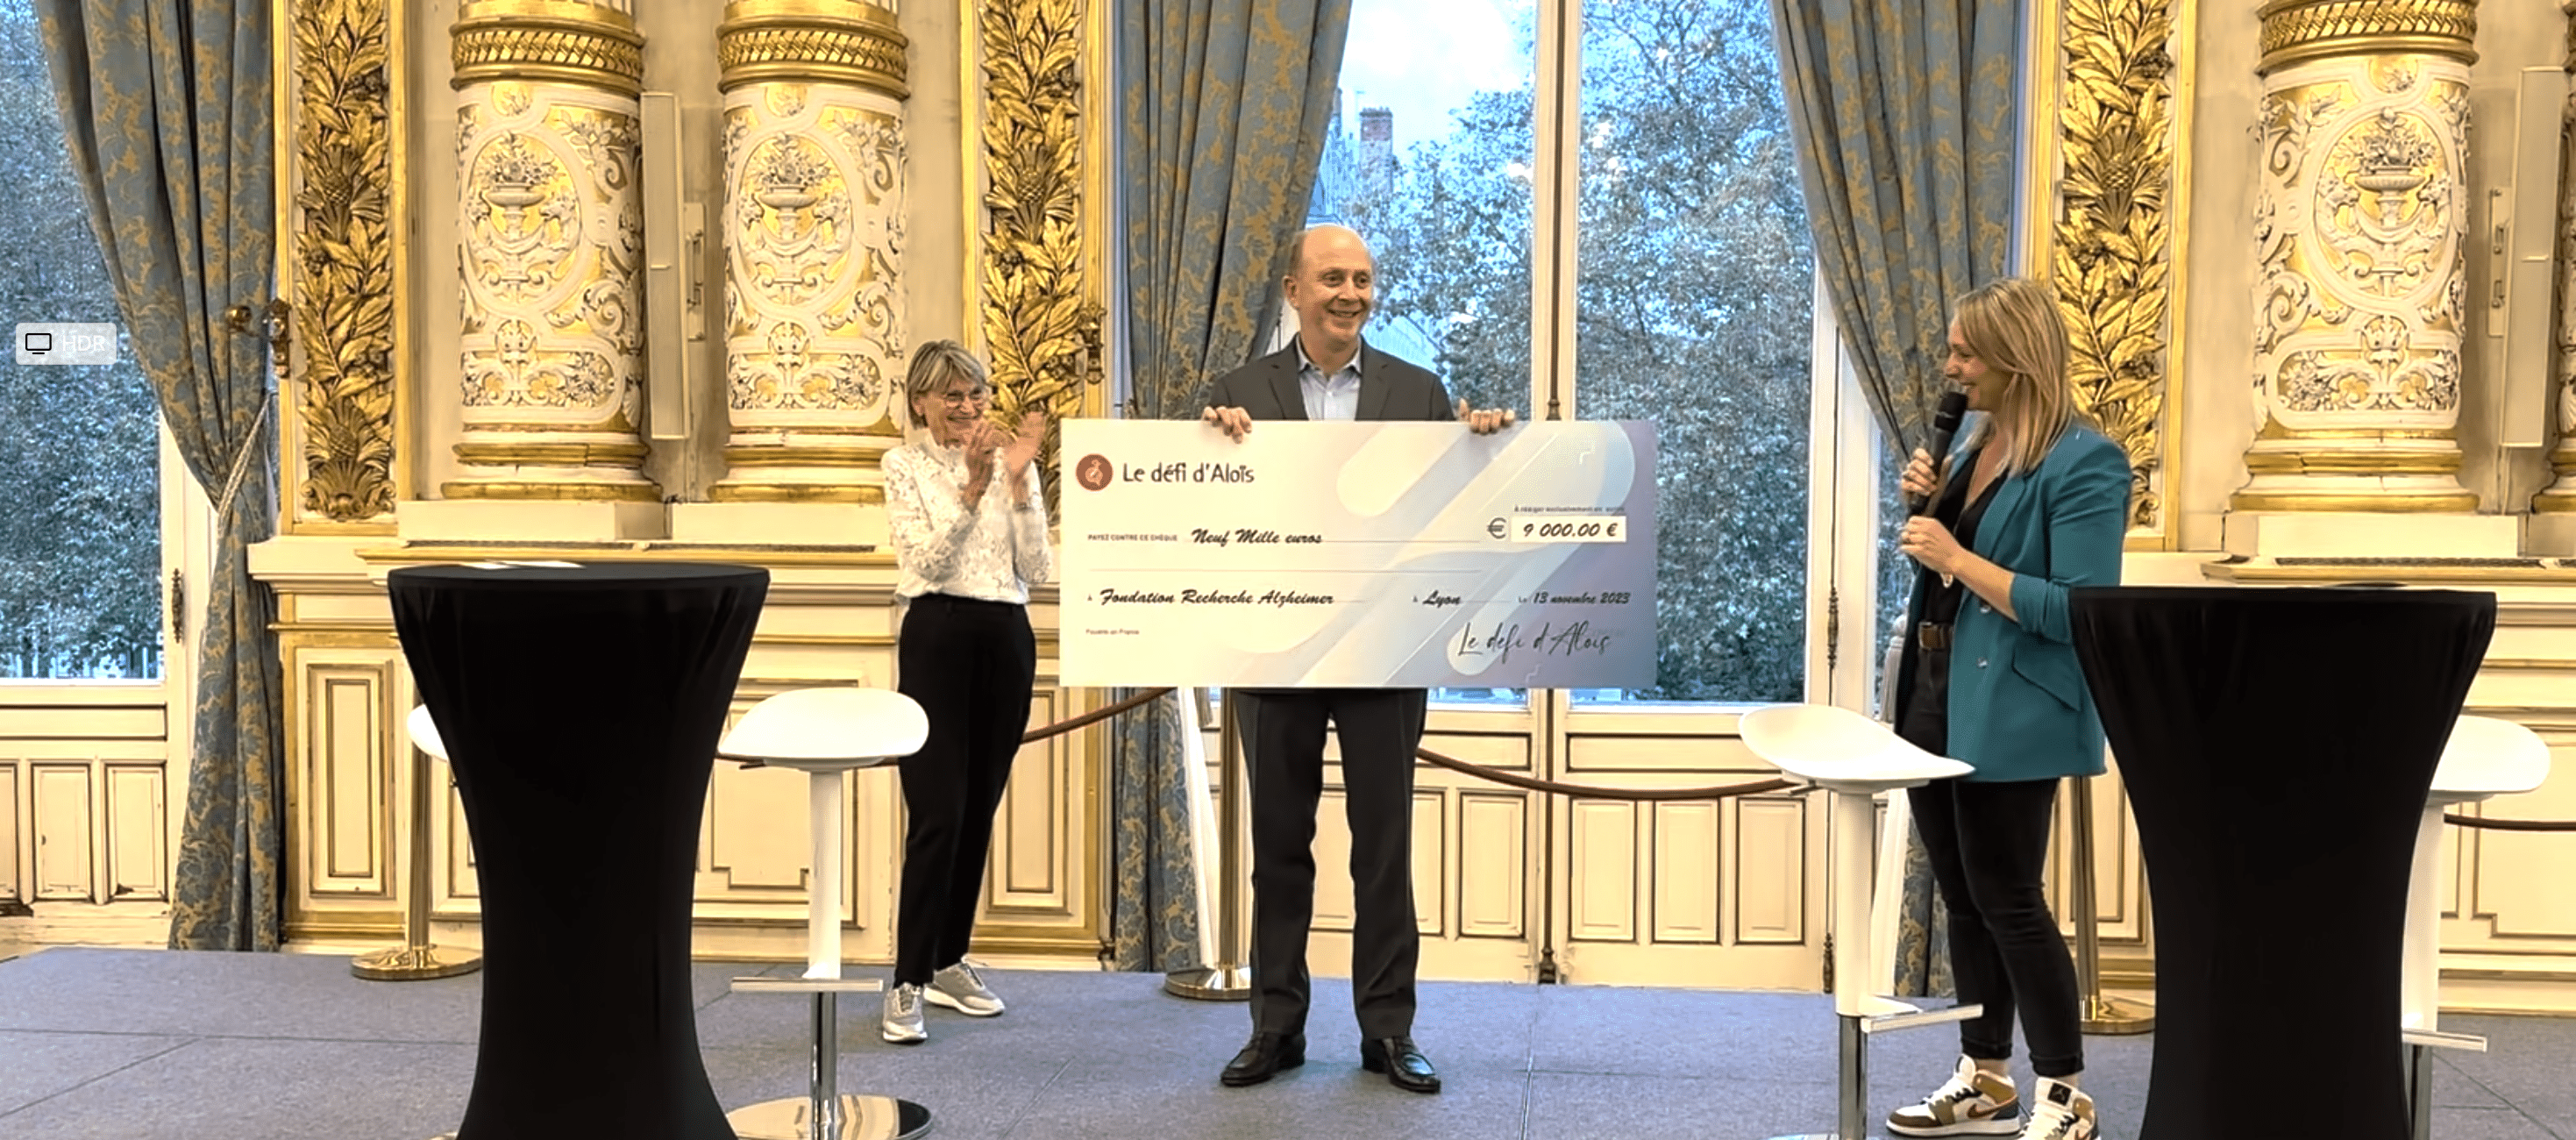 Dr Olivier de Ladoucette reçoit pour la Fondation Recherche Alzheimer un chèque de 9000 € de la part du défi d'Aloïs.